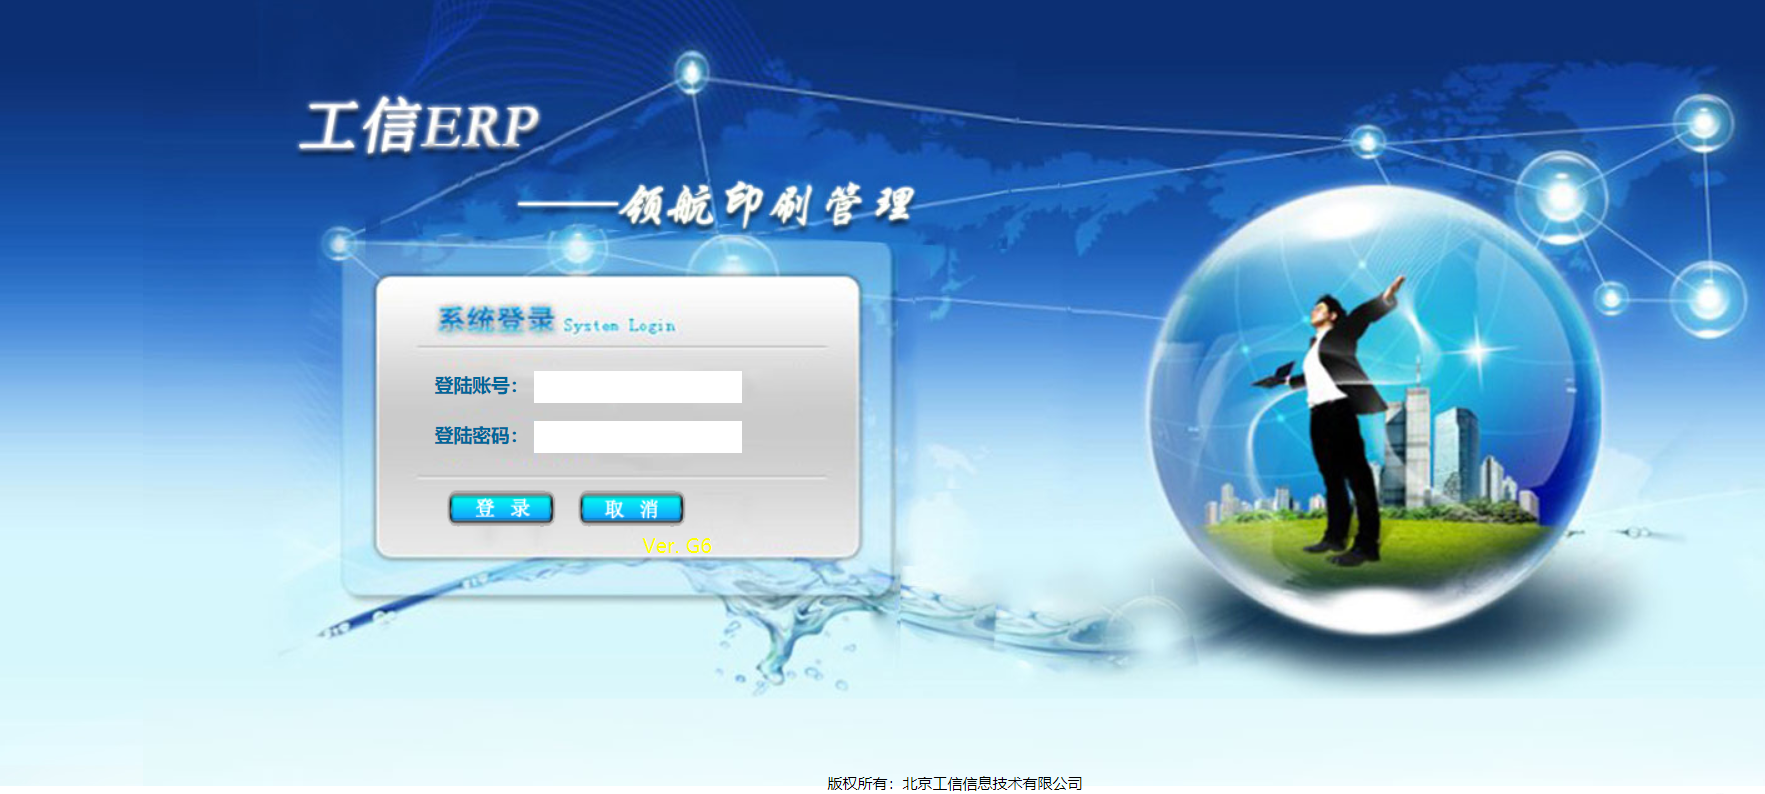 工信商务印刷ERP系统-企业版 V6.20.0.0